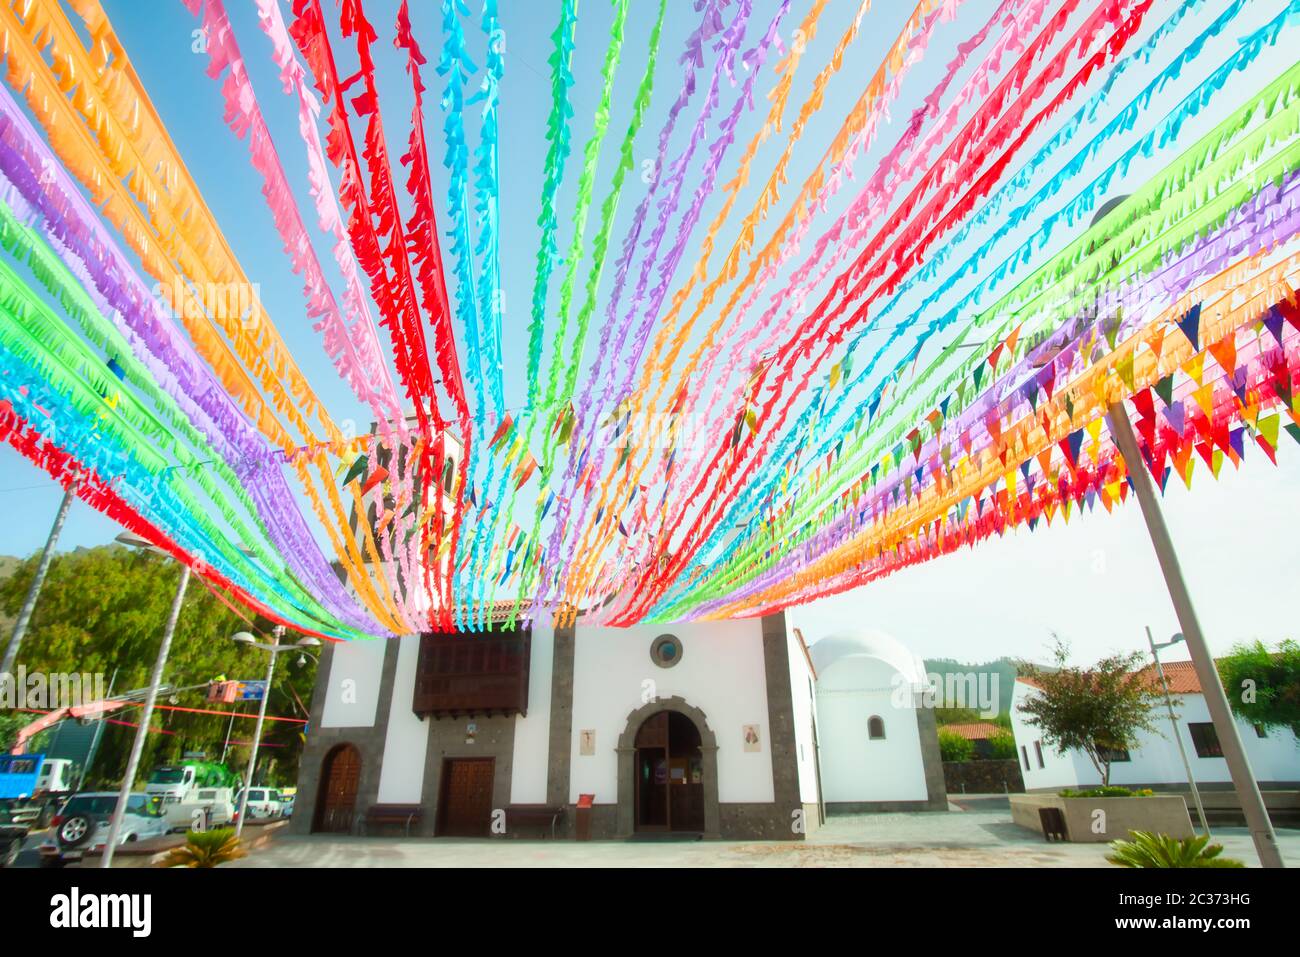 Farbige Fahnen Dekoration für christliche Feiertag katholische Kirche  Stockfotografie - Alamy